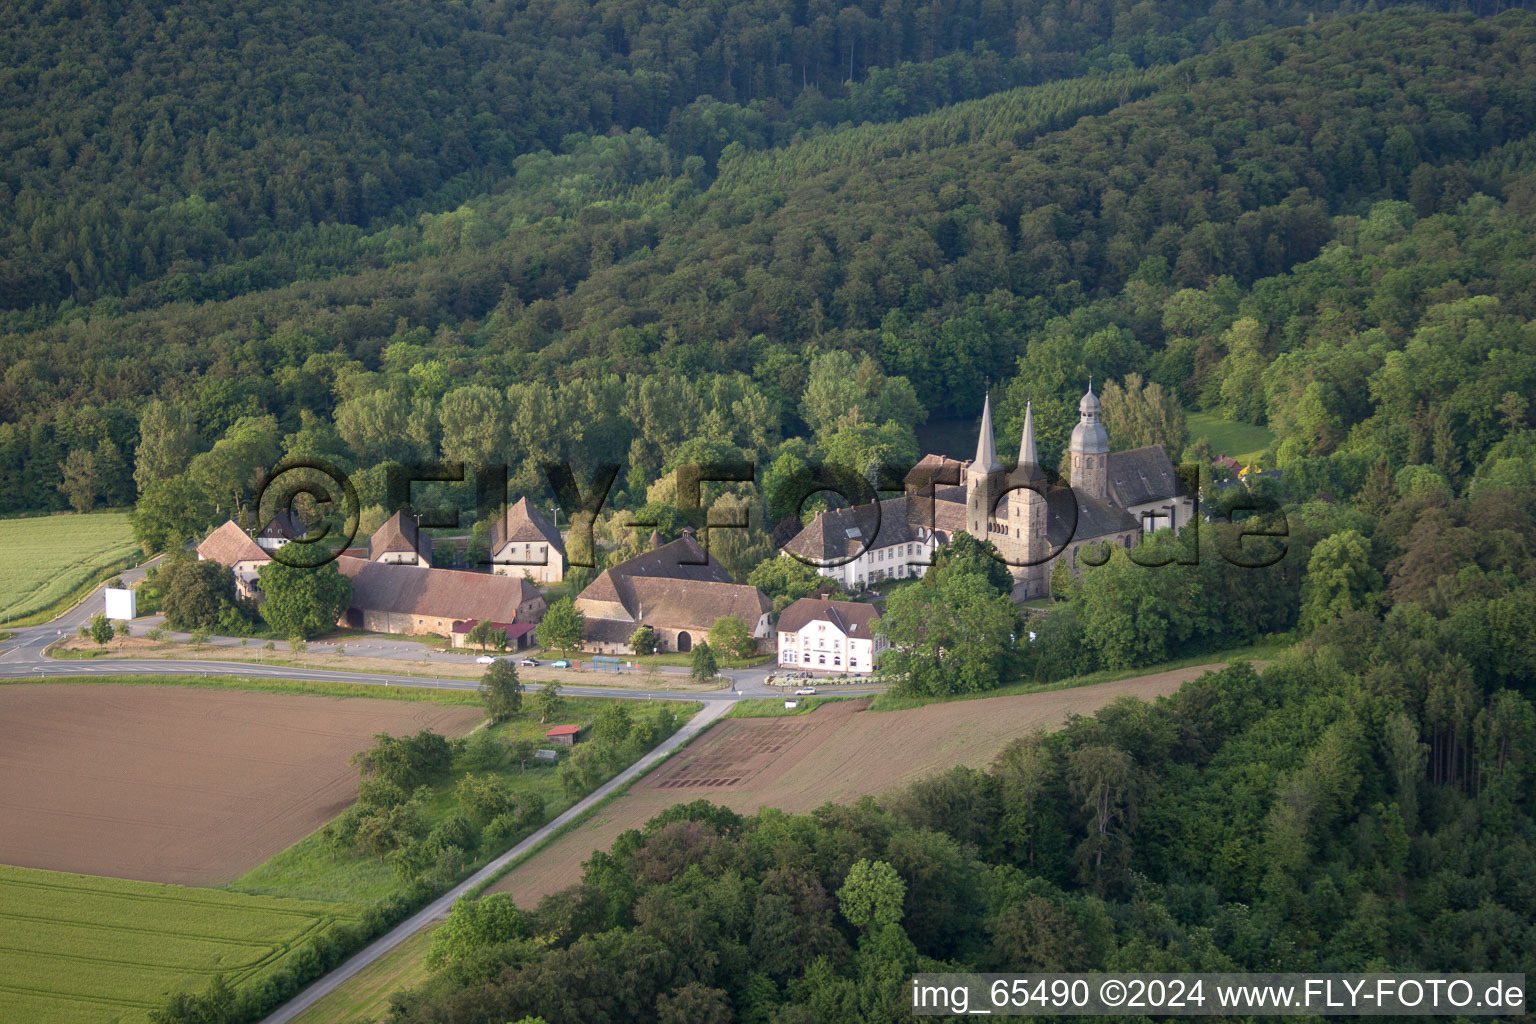 Vue aérienne de Ensemble immobilier du monastère abbatial Marienmünster à Marienmünster dans le département Rhénanie du Nord-Westphalie, Allemagne